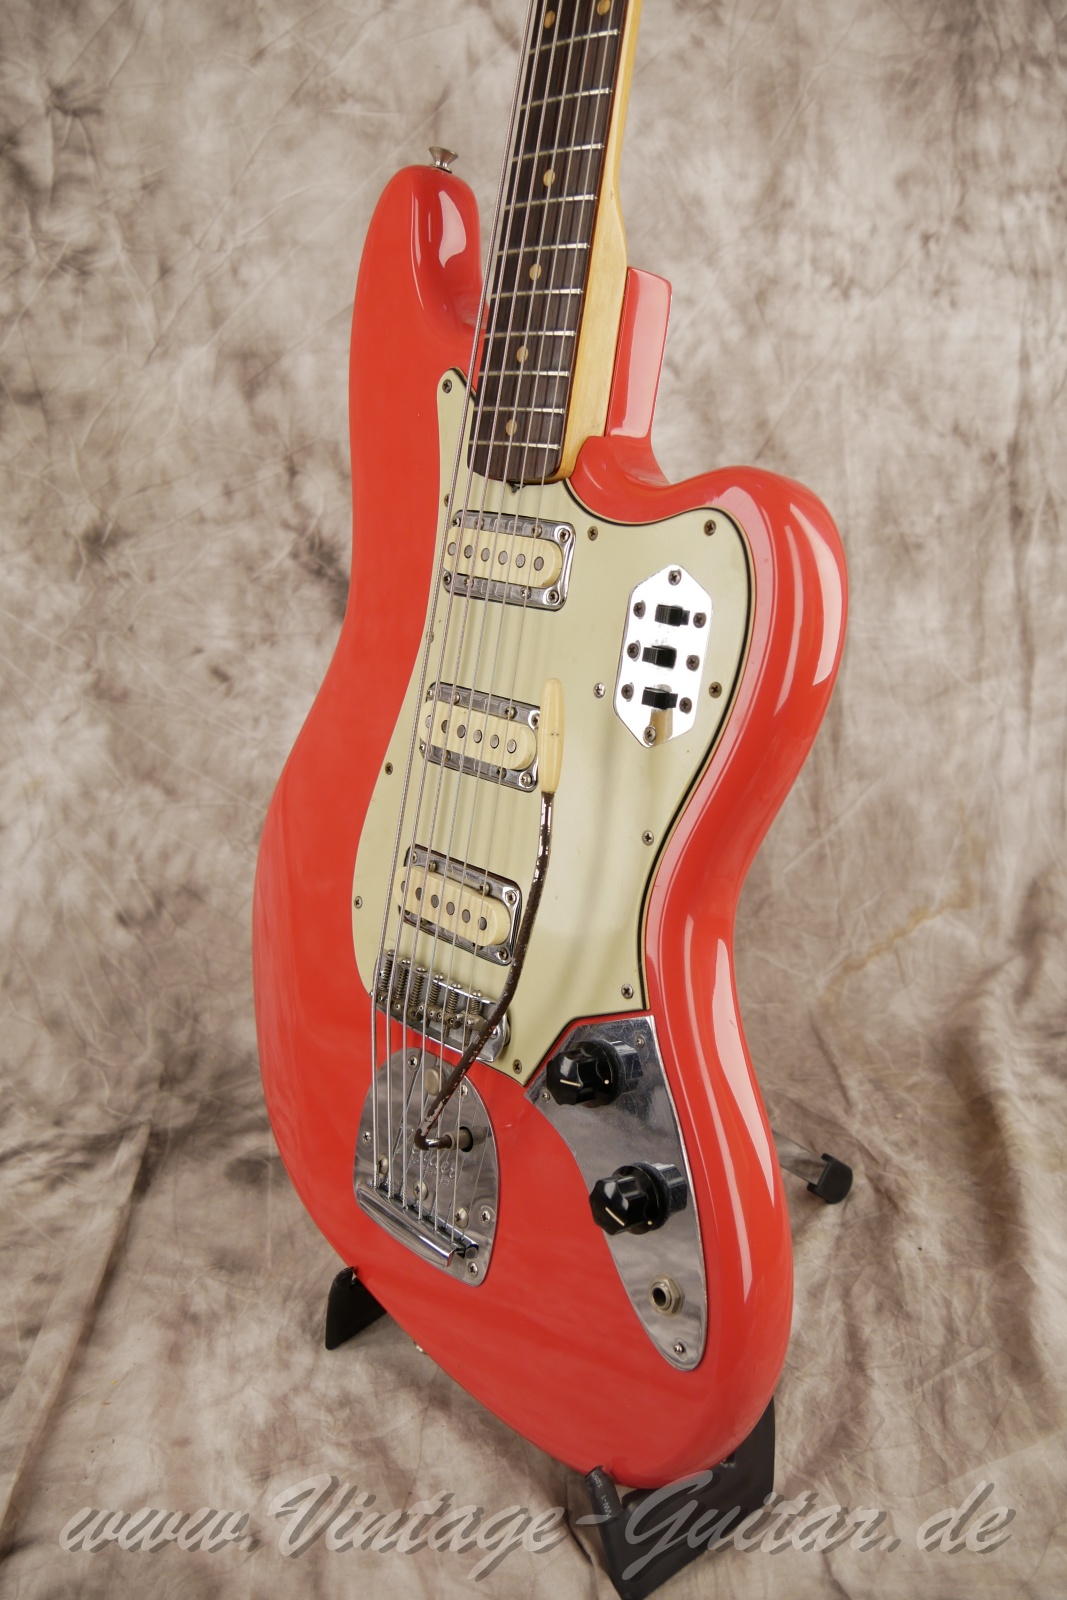 Fender_VI_Bass_Gitarre_Baujahr_1962_fiesta_red_refinished-010.jpg